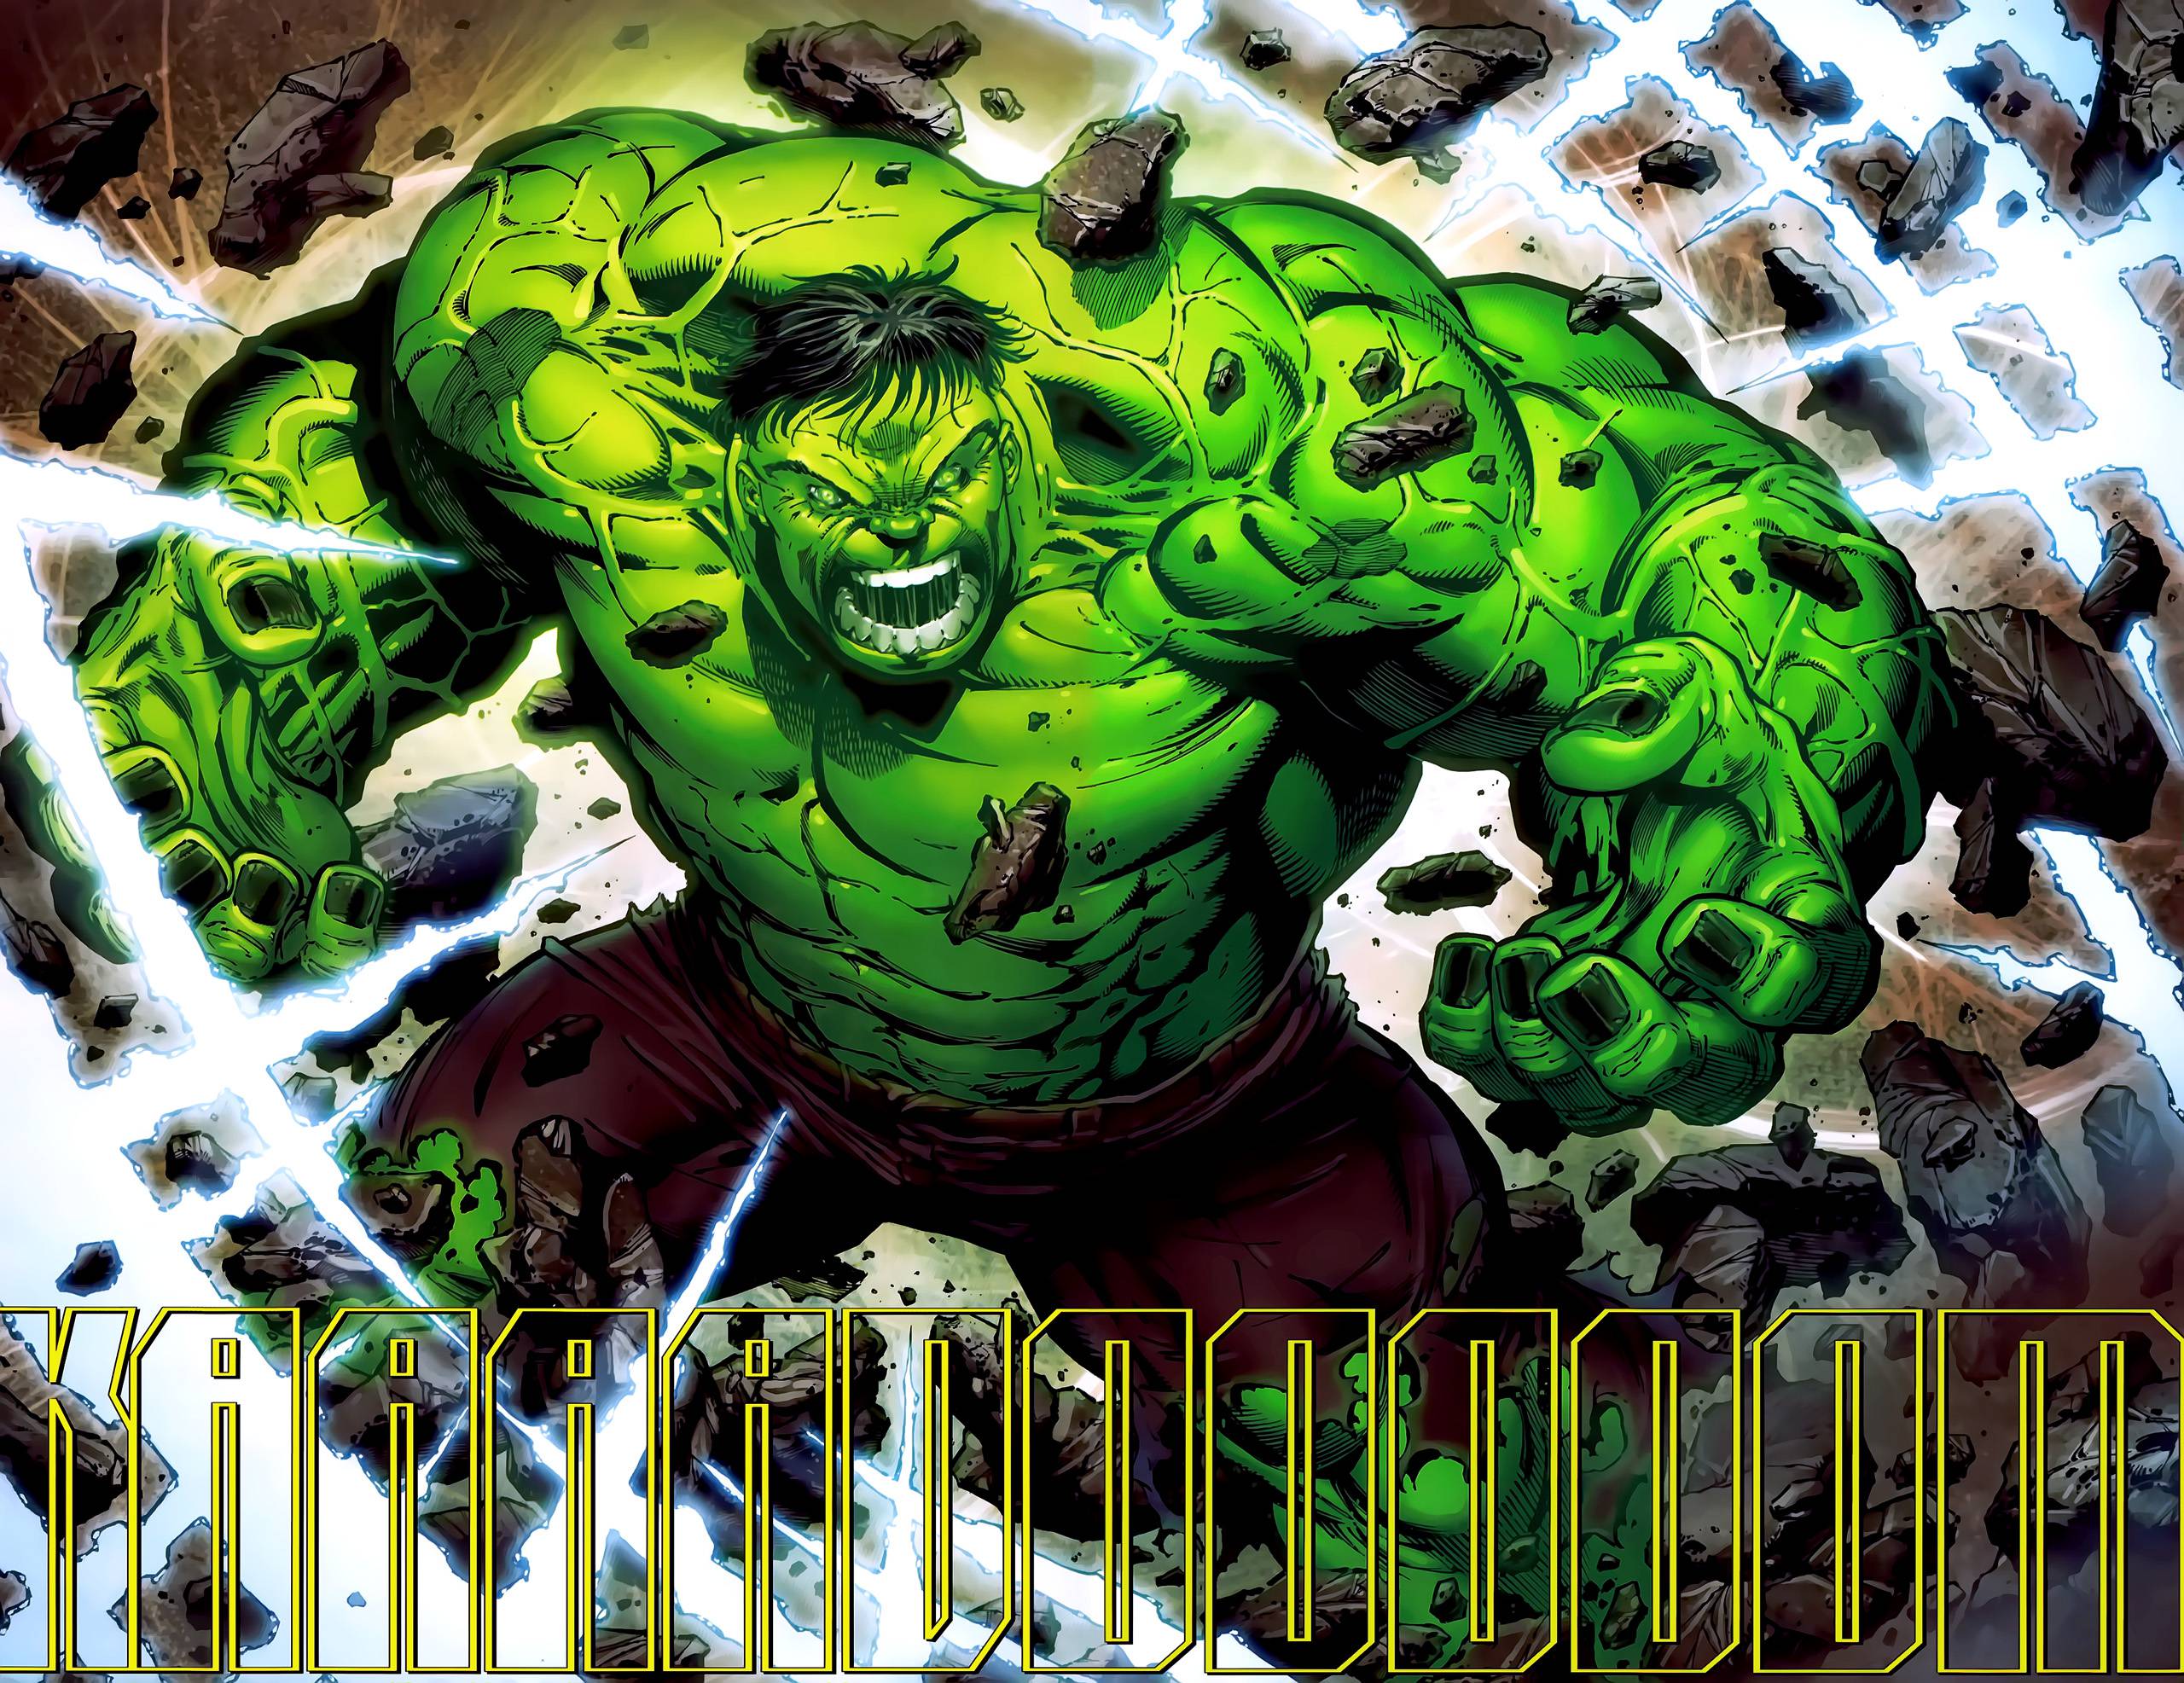 Incredible hulk